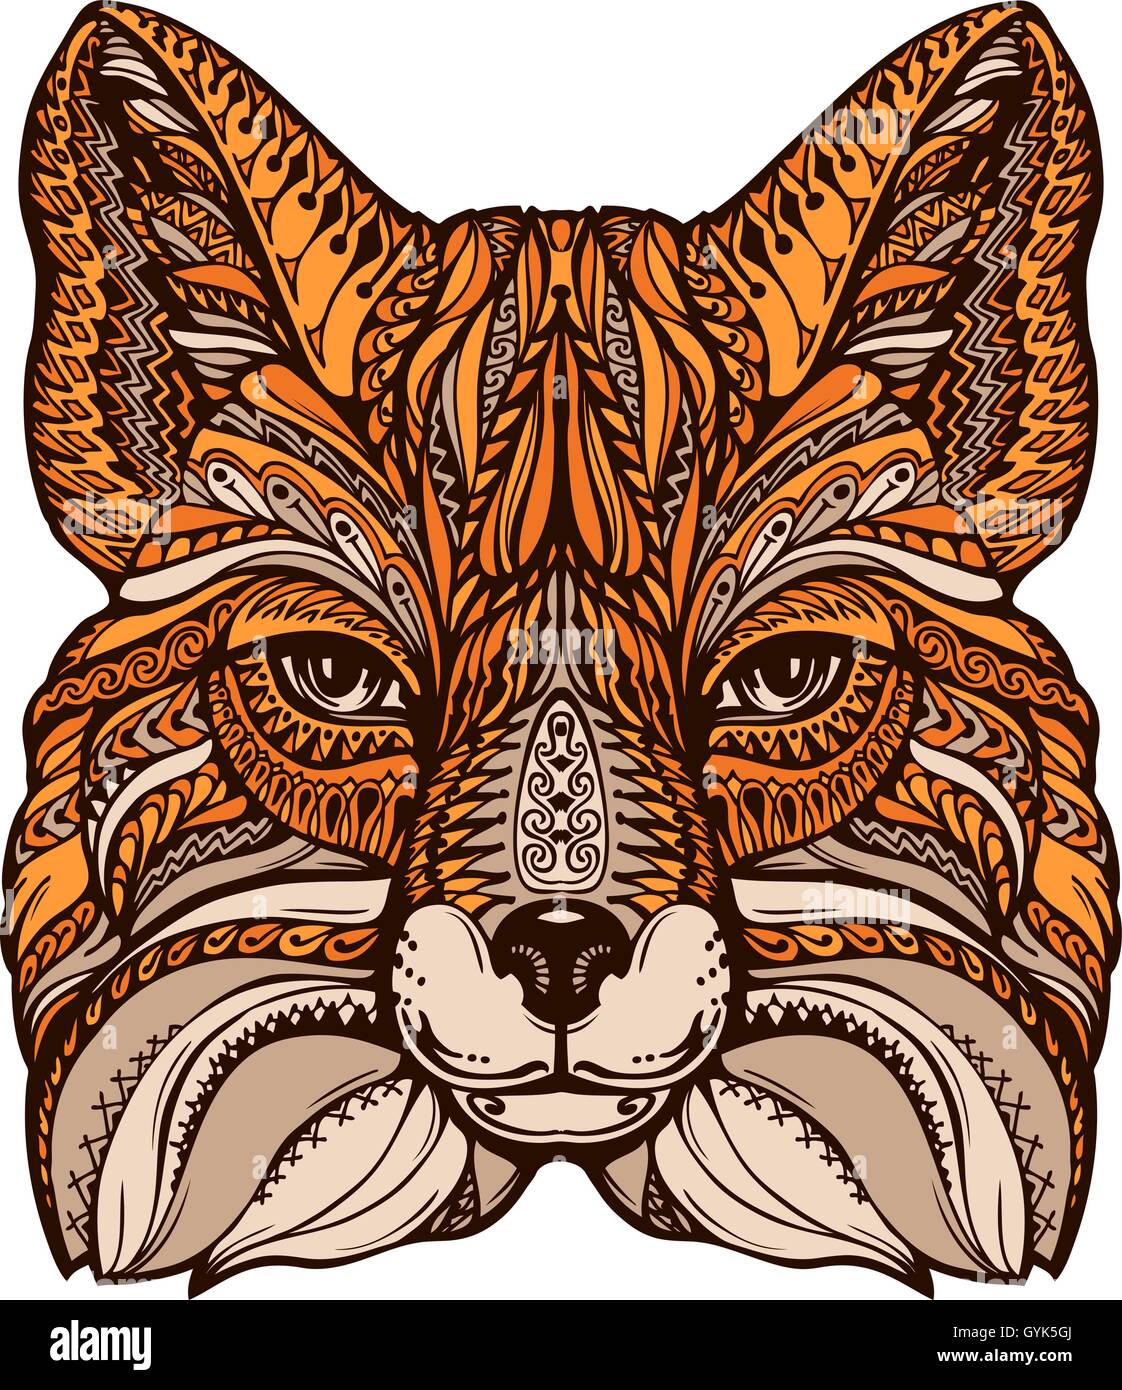 Fox ornamentada étnicos. Ilustración vectorial dibujada a mano con elementos decorativos Ilustración del Vector